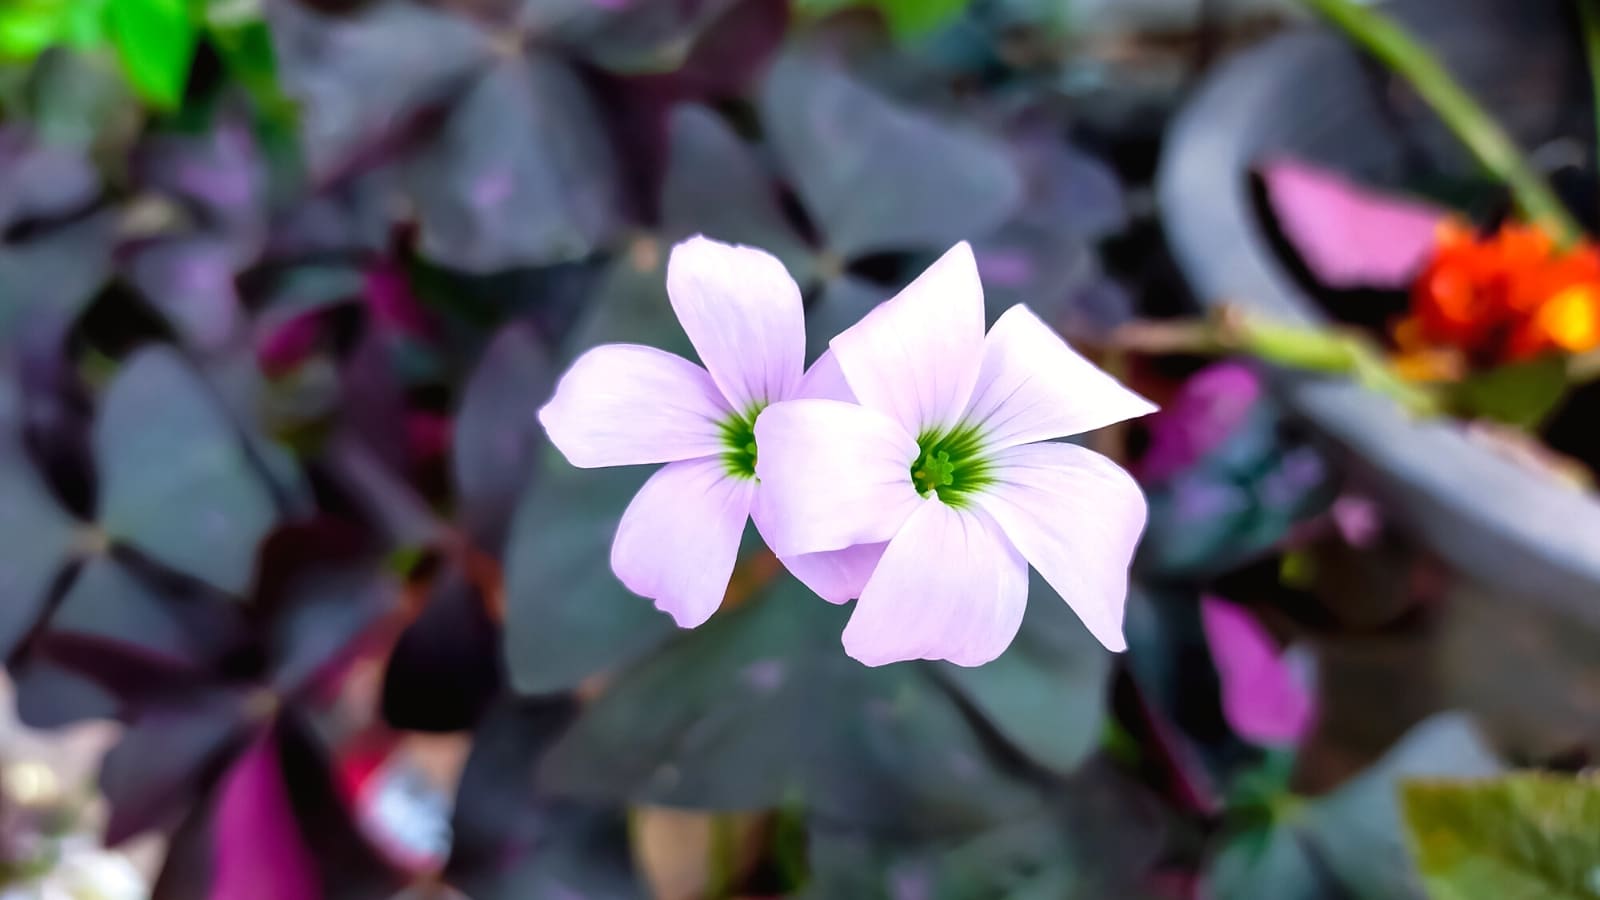 Un primer plano de flores blancas de Oxalis con pétalos delicados y centros de color verde brillante.  Las flores contrastan maravillosamente con las hojas de color violeta oscuro, creando una exhibición encantadora de colores y texturas.